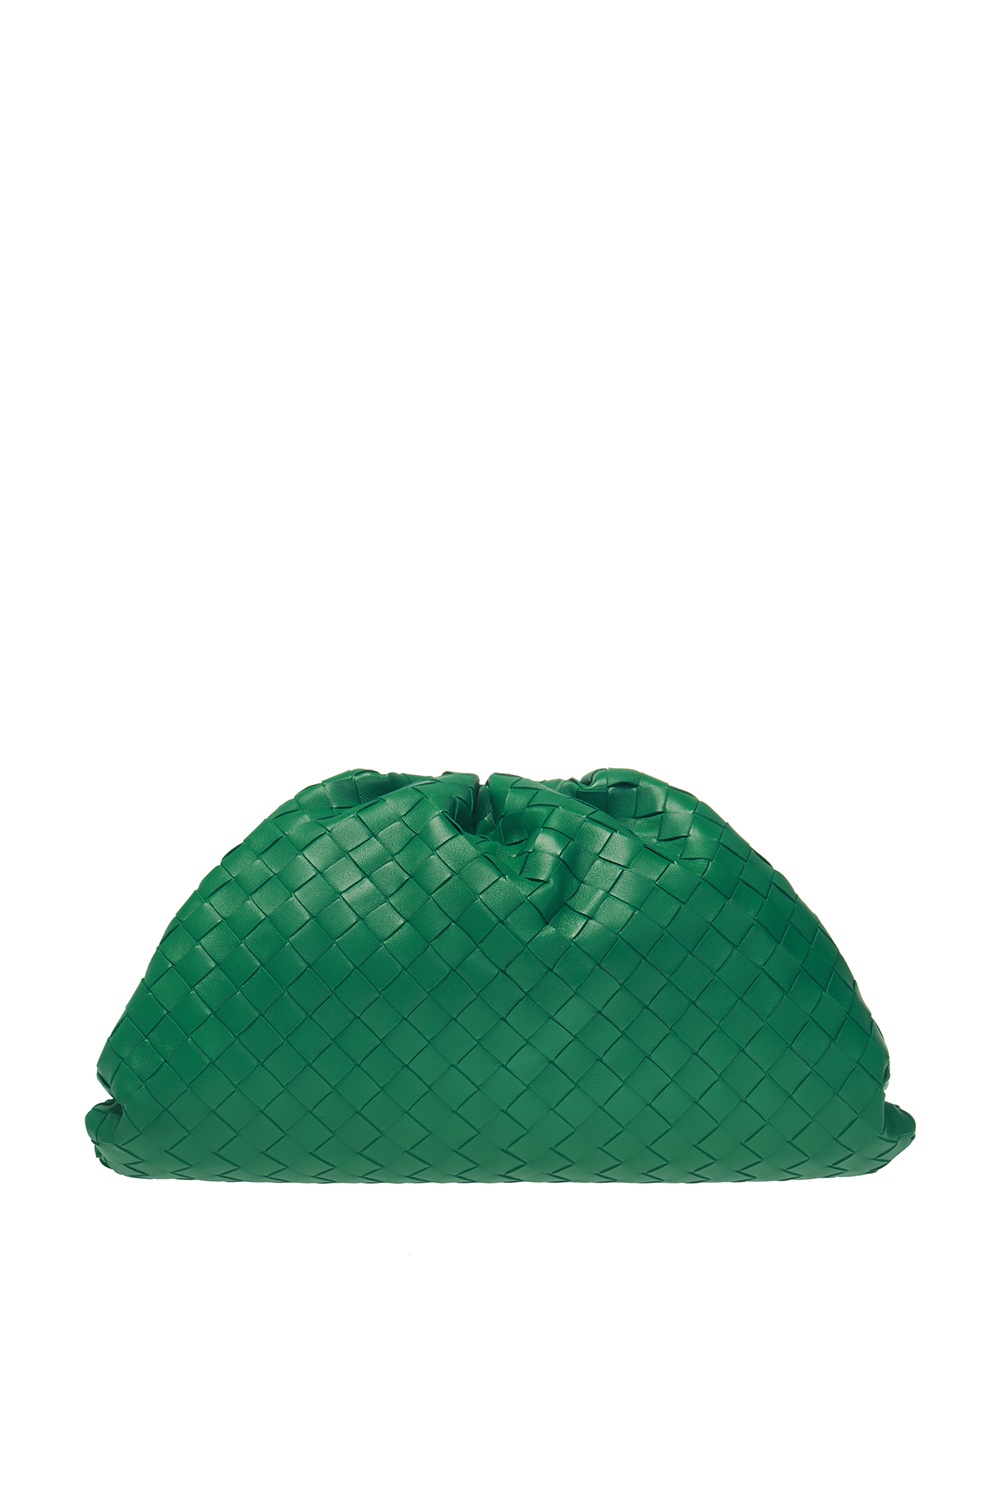 Bottega Veneta ‘The Pouch’ hand bag